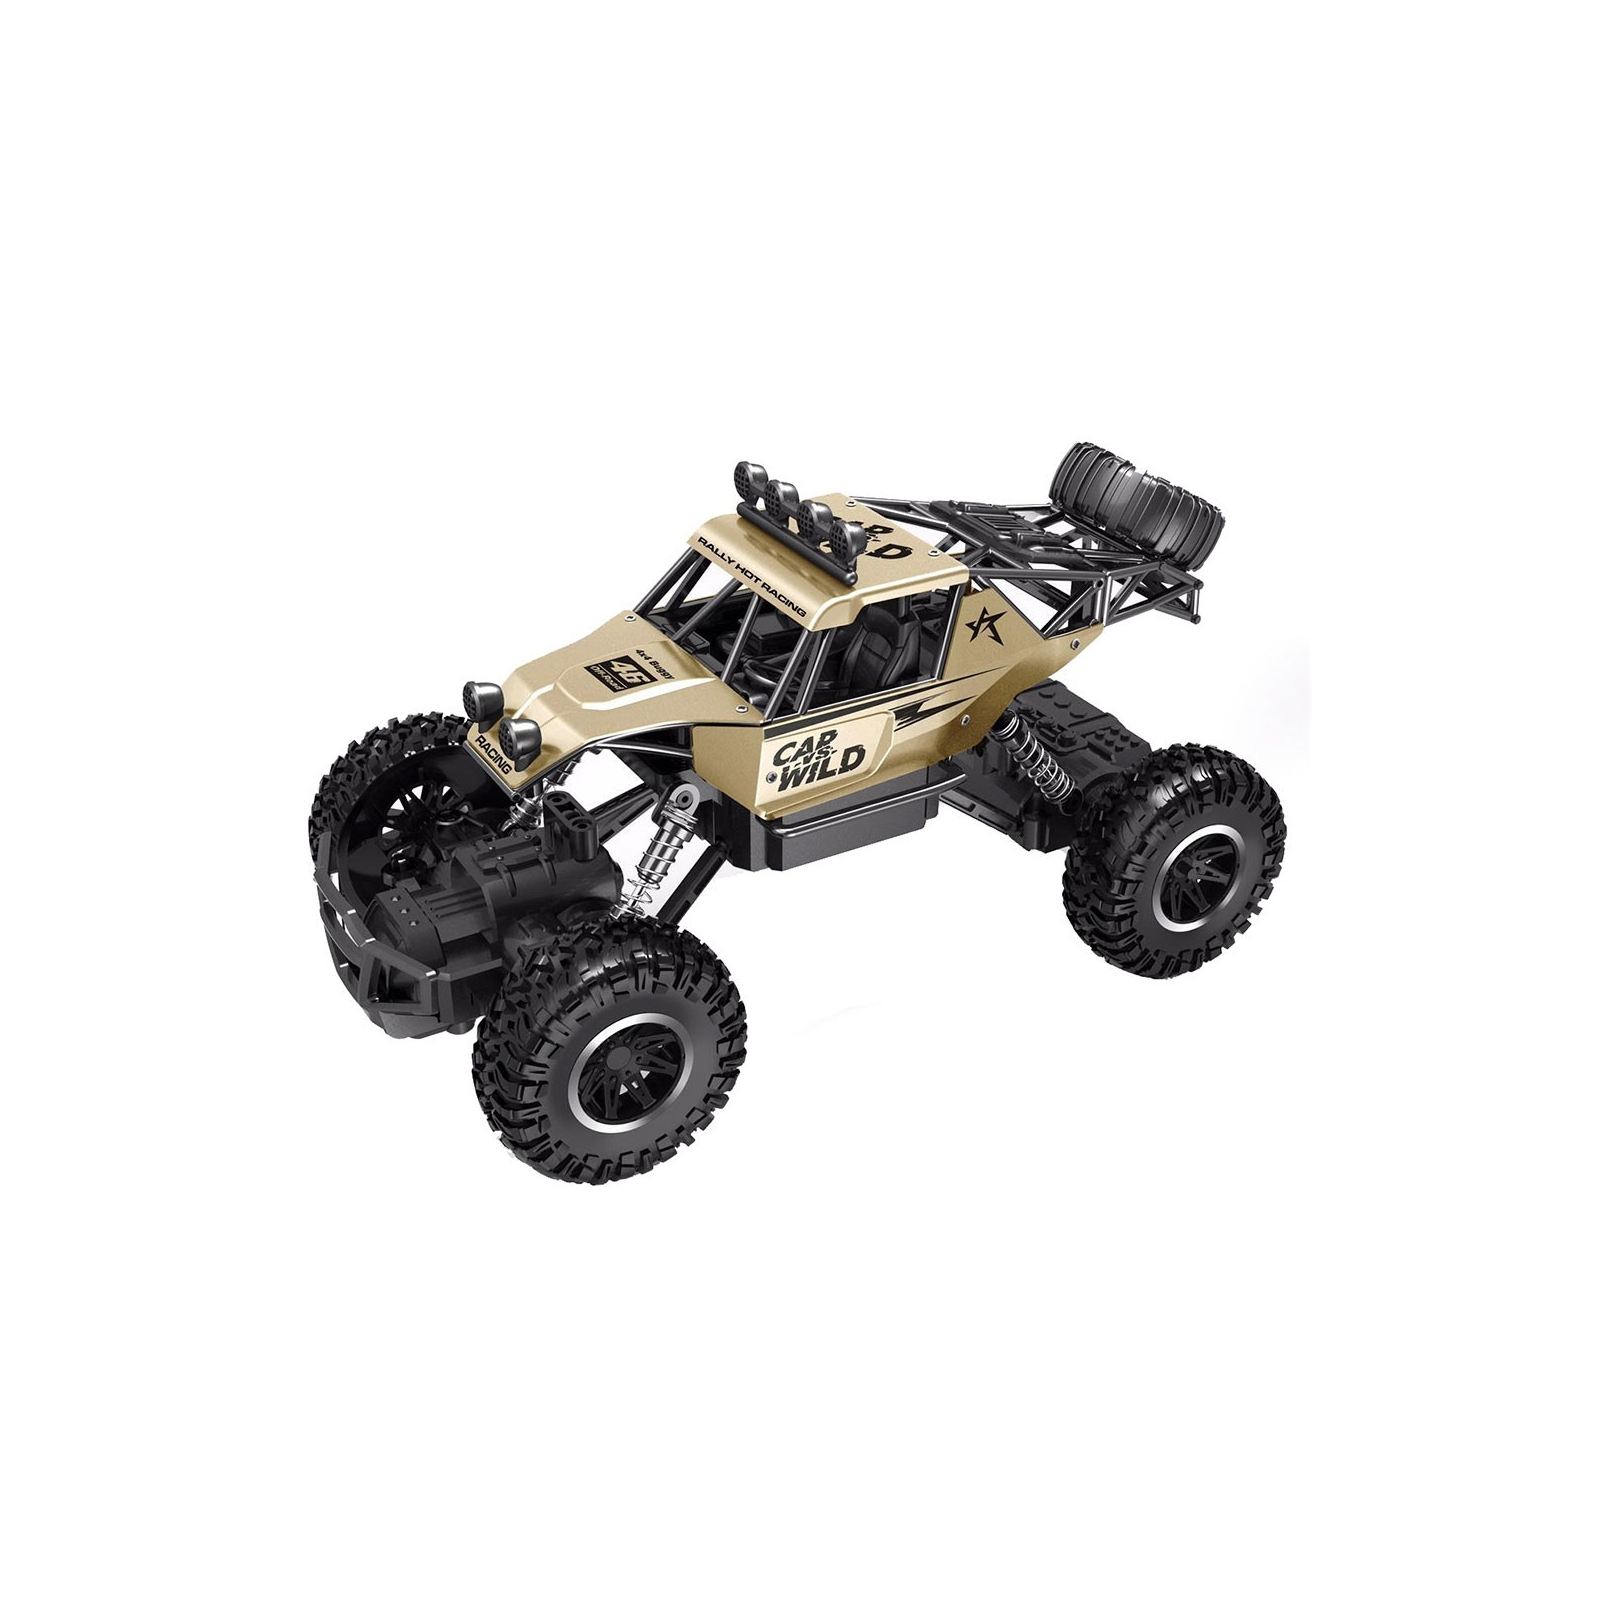 Радиоуправляемая игрушка Sulong Toys OFF-ROAD CRAWLER CAR VS WILD Золотой 1:20 (SL-109AG)